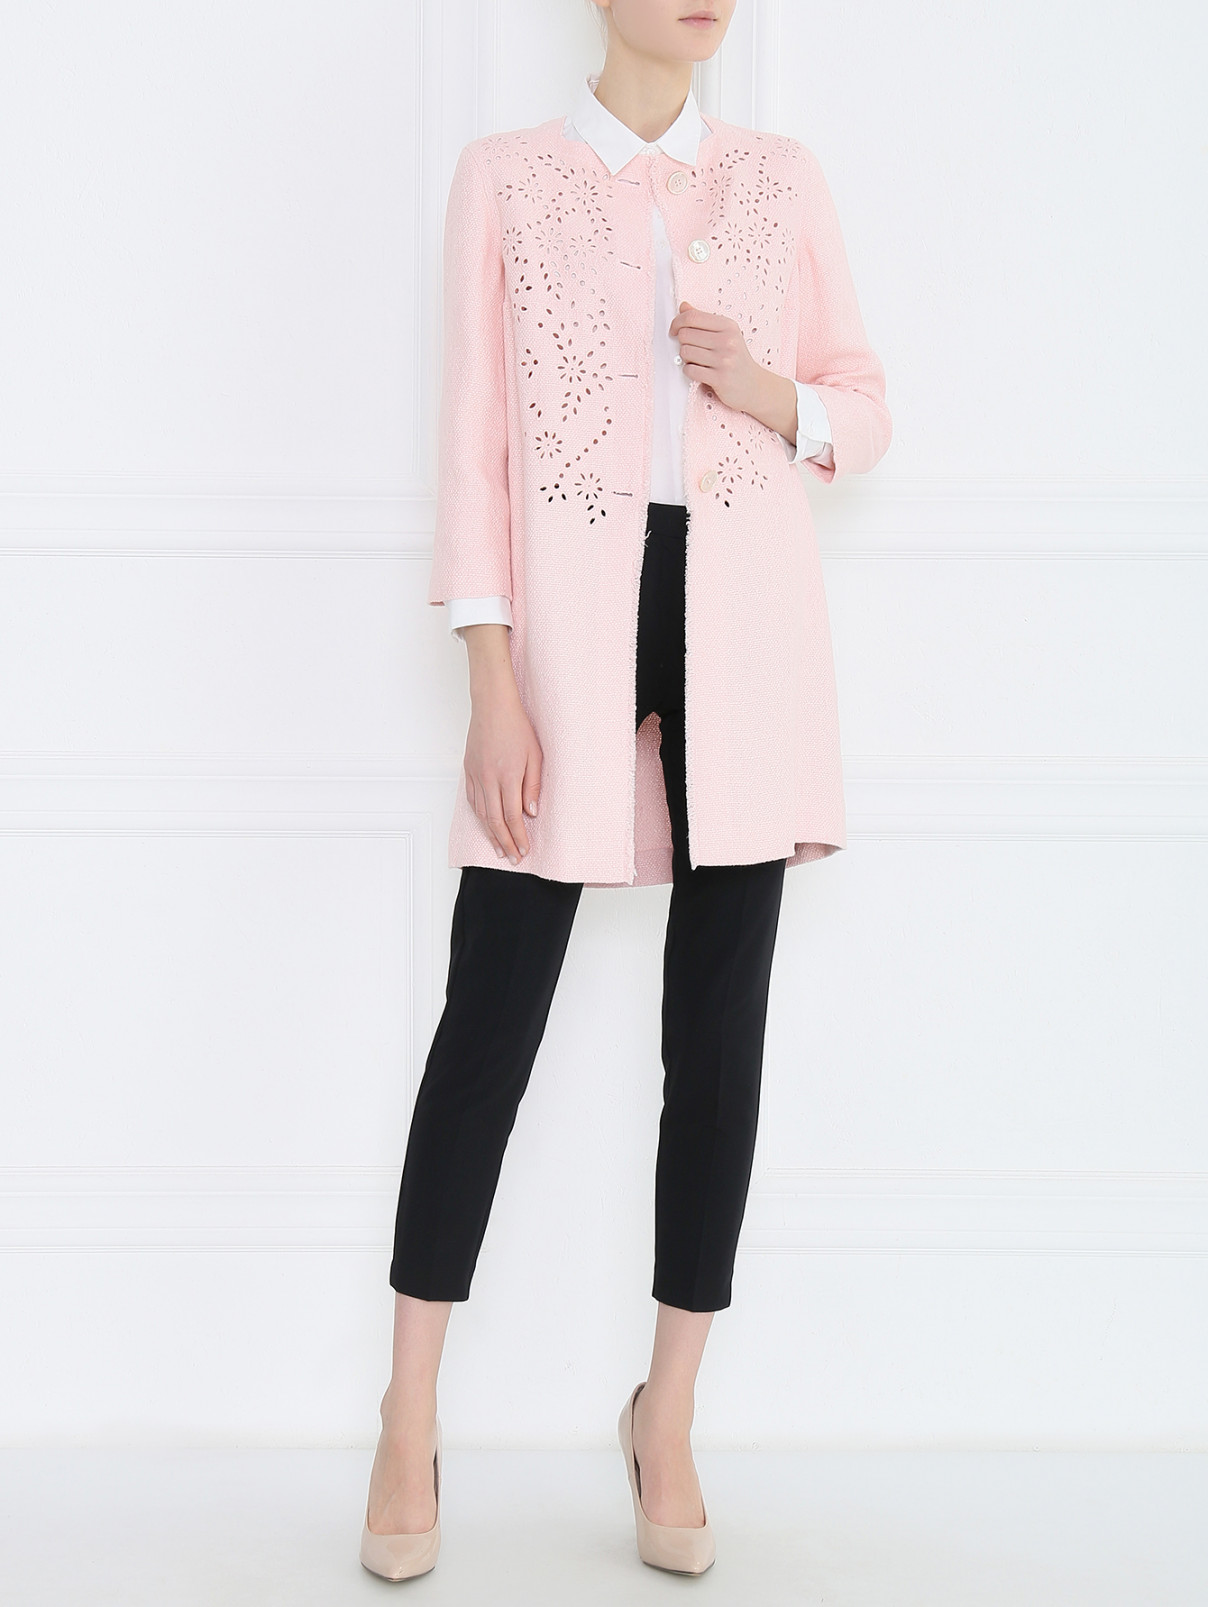 Пальто однобортное изо льна с перфорацией Ermanno Scervino  –  Модель Общий вид  – Цвет:  Розовый